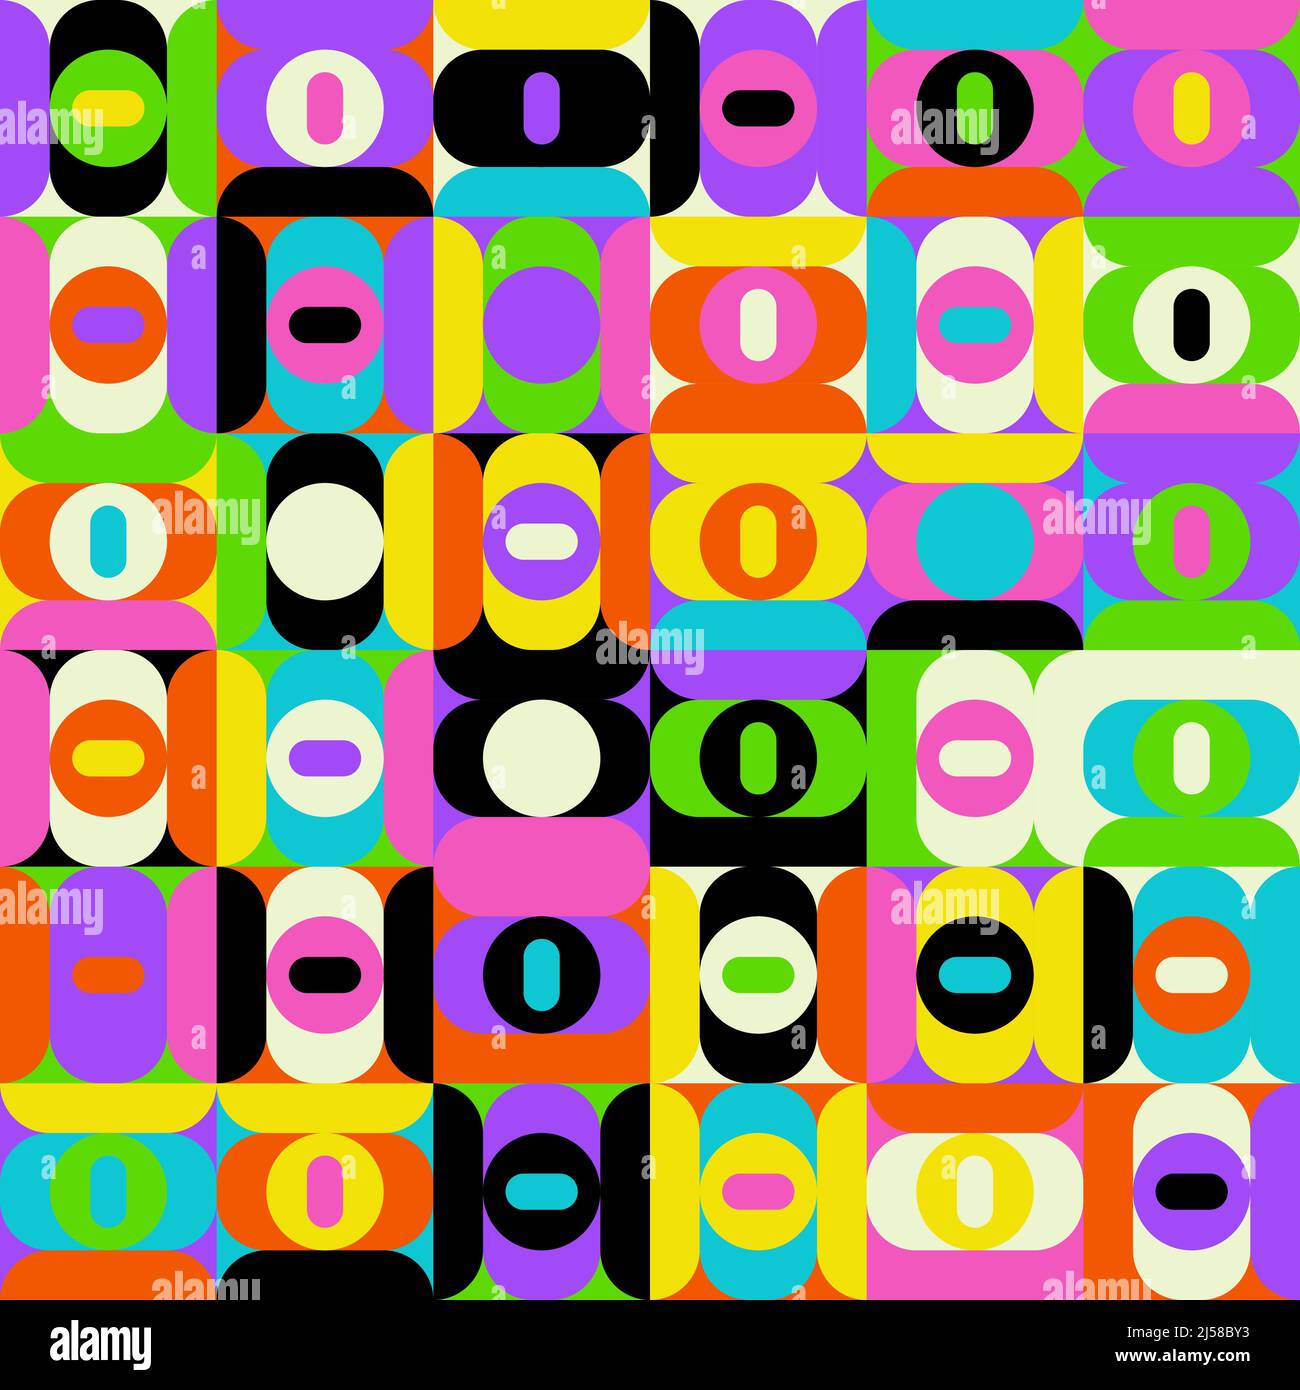 Grafica vettoriale astratta colorata al neon realizzata con varie forme geometriche ed elementi. Grafica digitale per poster, copertina, arte, presentazione Illustrazione Vettoriale